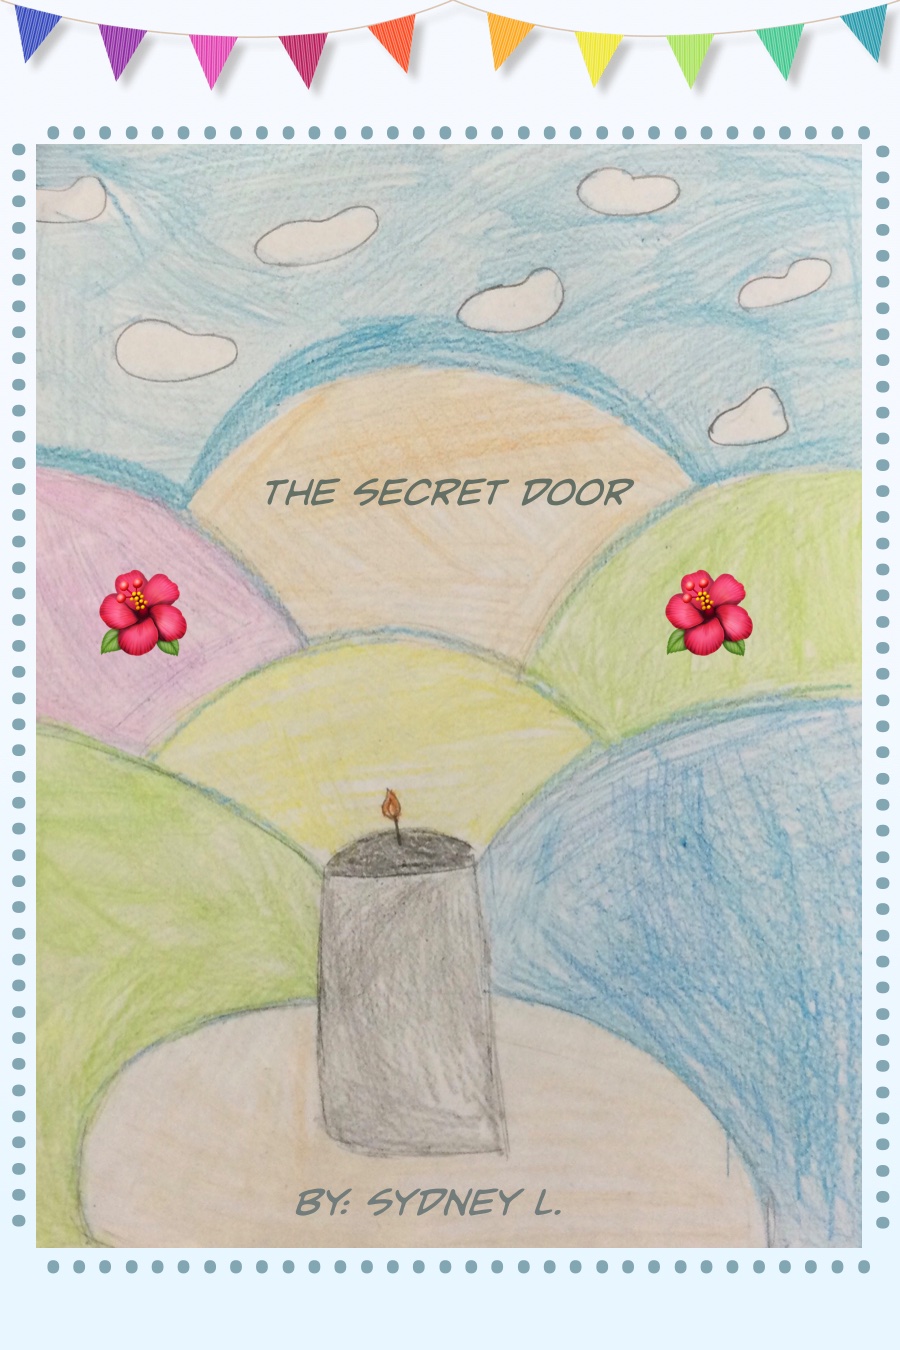 The Secret Door by Sydney L